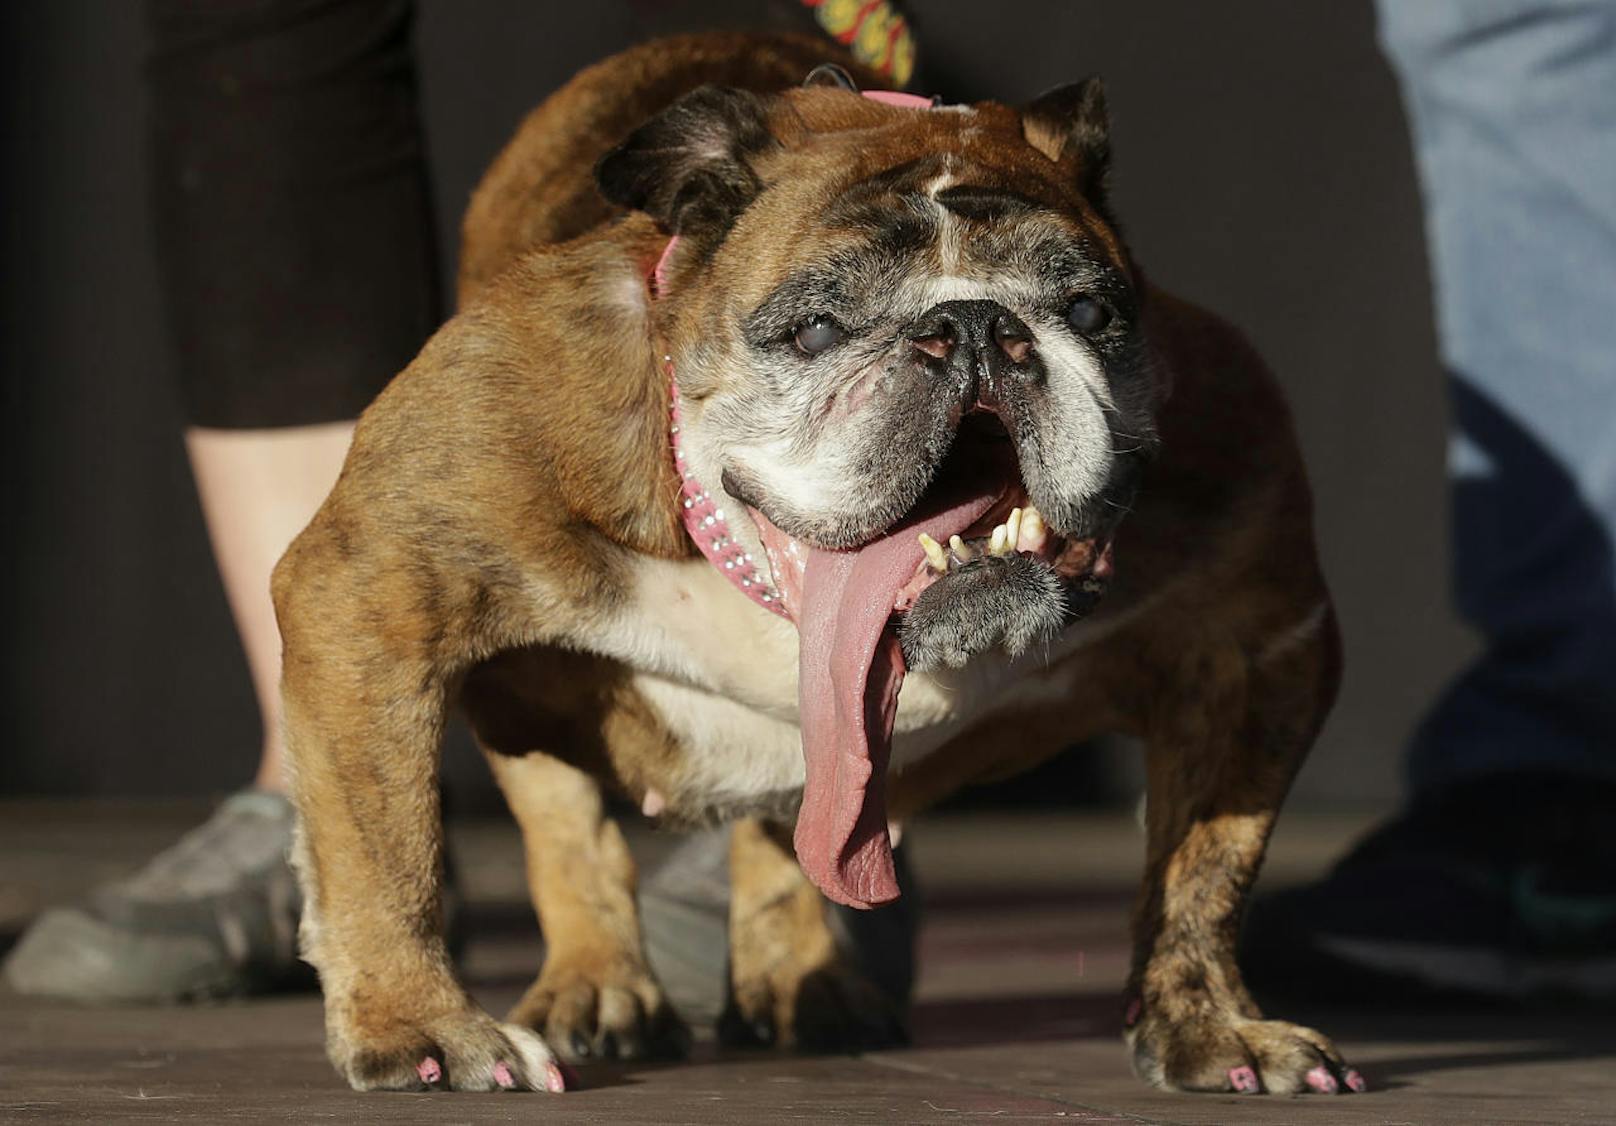 Der Sieger: Zsa Zsa, eine englische Bulldogge, ist offiziell "Der hässlichste Hund 2018".